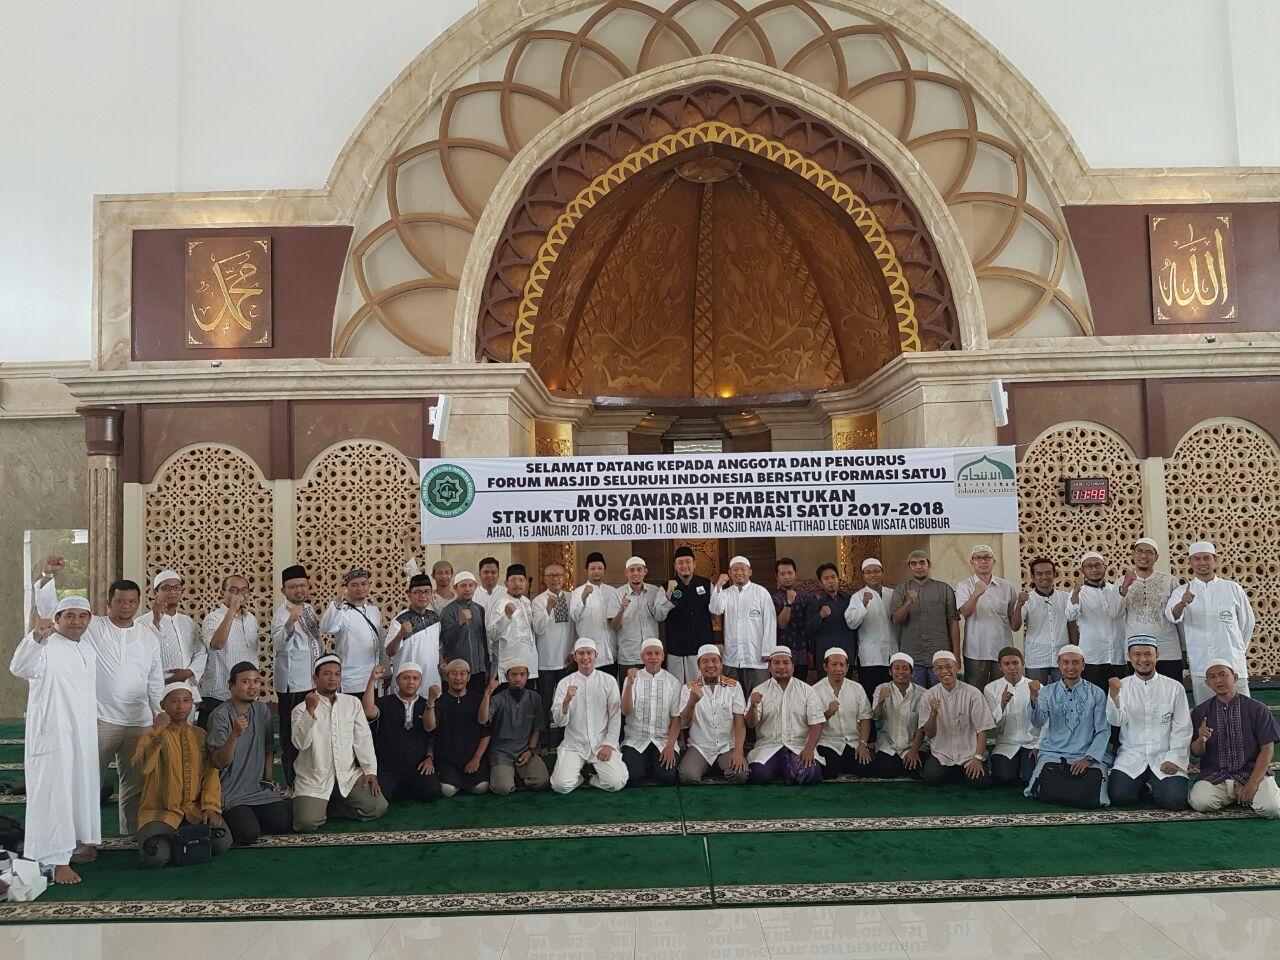 Pembentukan Forum Masjid Seluruh Indonesia Bersatu (Formasi Satu) 